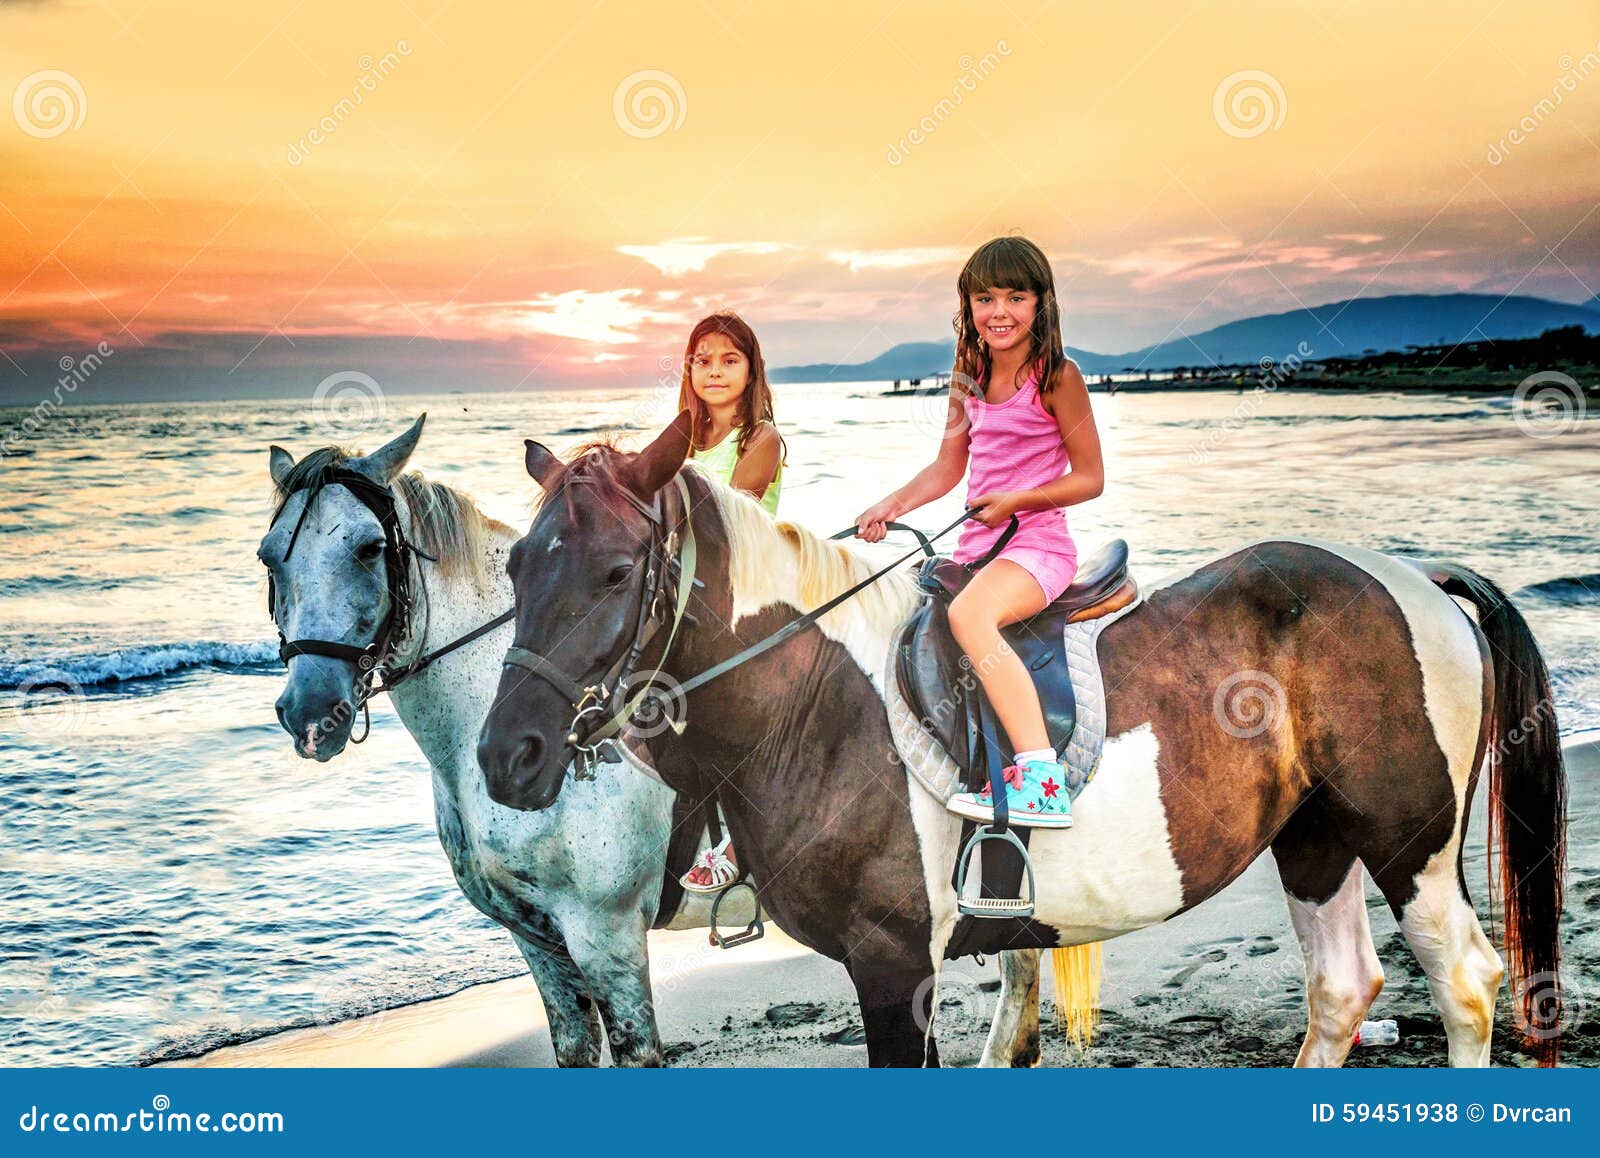 Sister ride. Сестрица на лошадях. Сёстры лошадей. Сестры и конь. Прокатись с сестрой на лошадках.